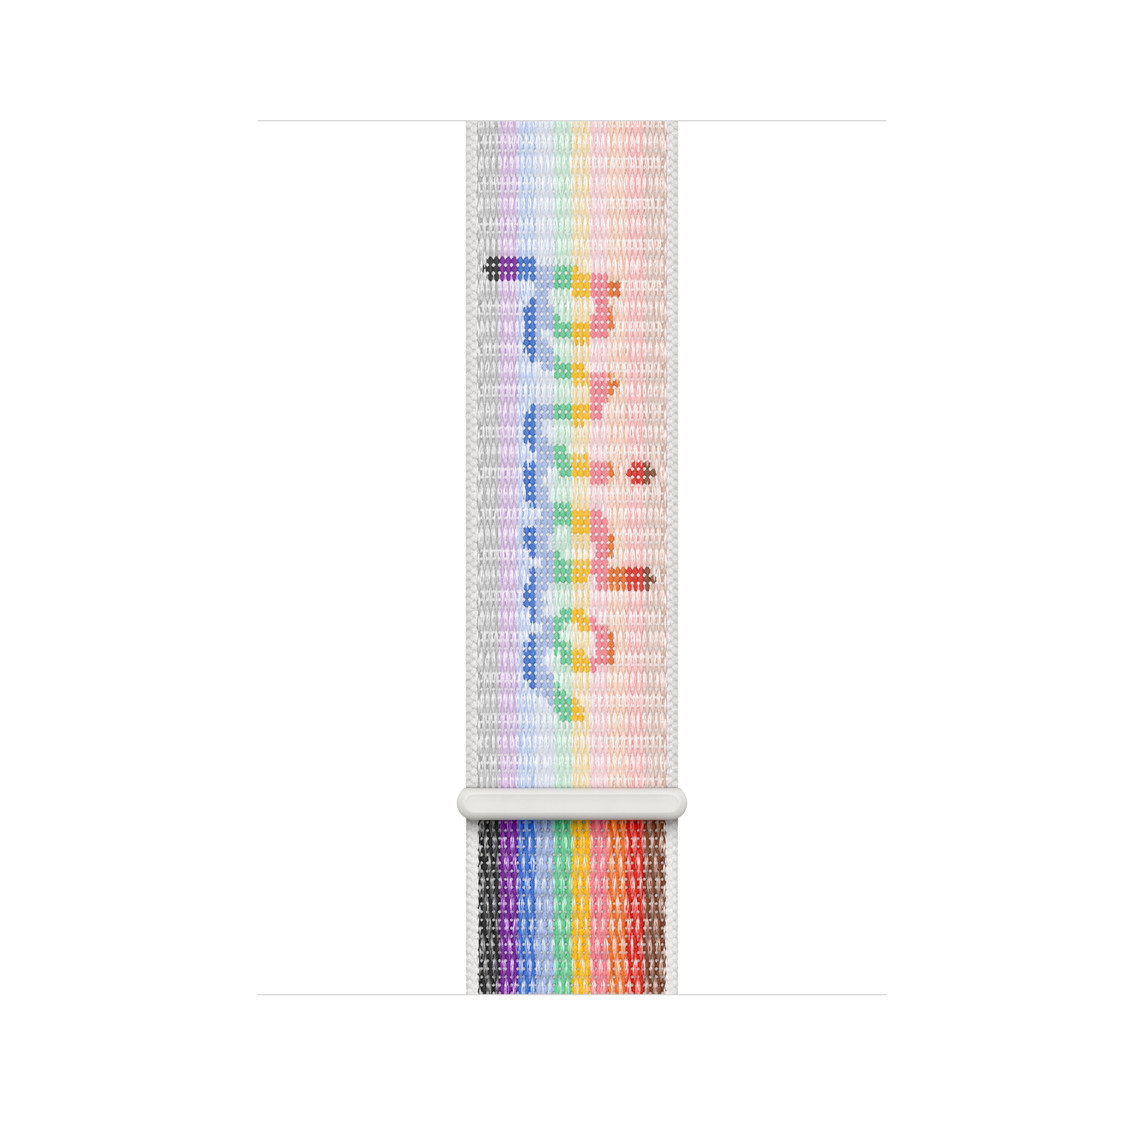 La correa loop deportiva Edición Orgullo (multicolor) para caja de 45 mm tiene un cierre ajustable con la palabra "pride" incorporada en su trama.